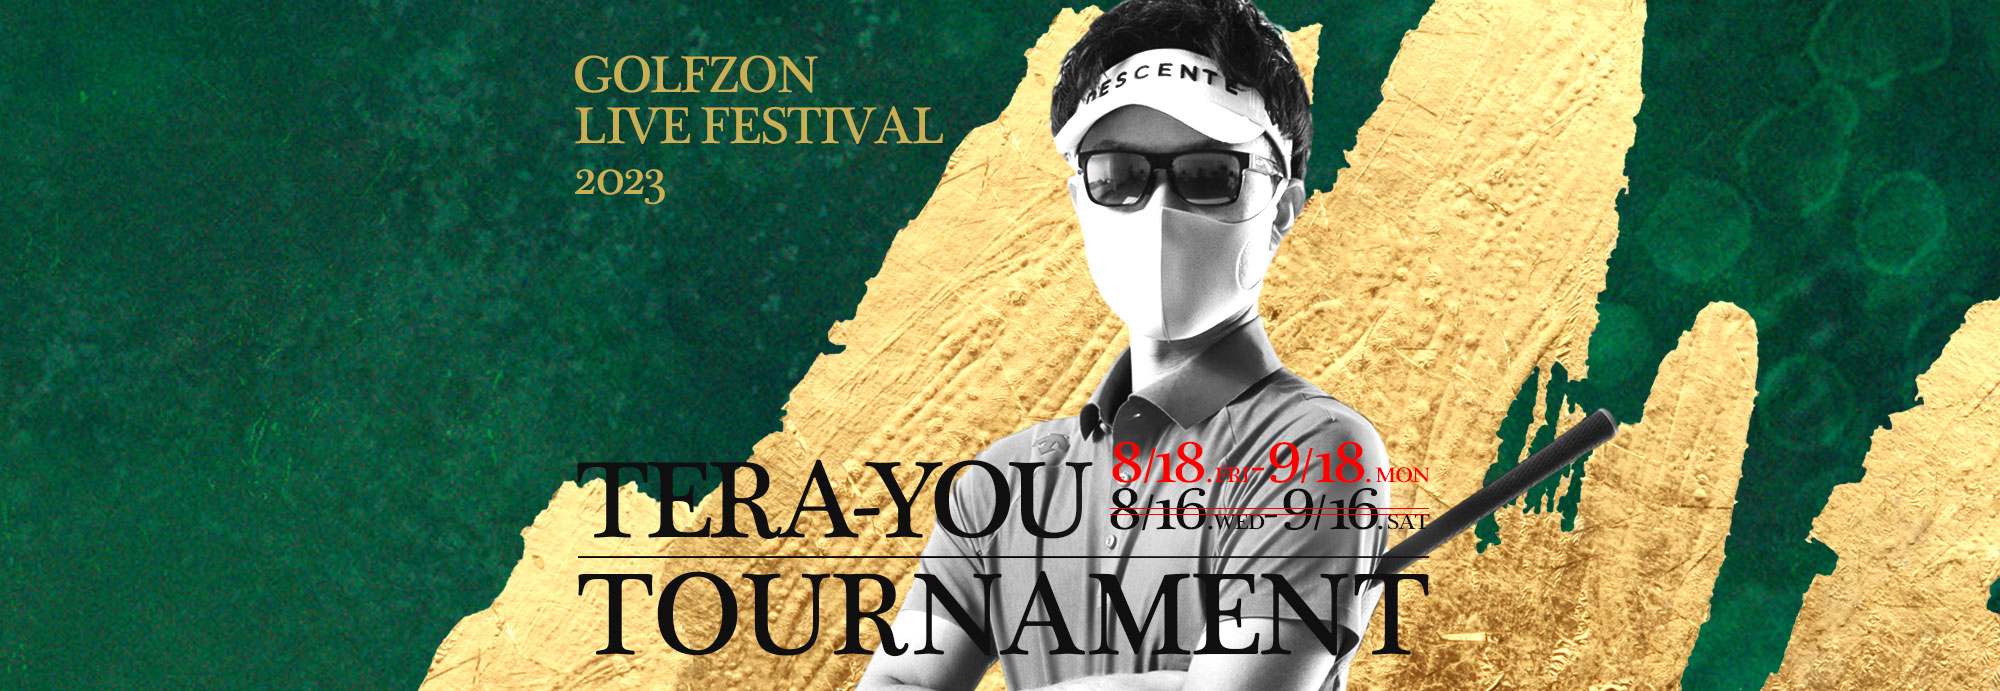 GOLFZON LIVE FESTIVAL2023／Tera-You・シミュレーションゴルフカップ